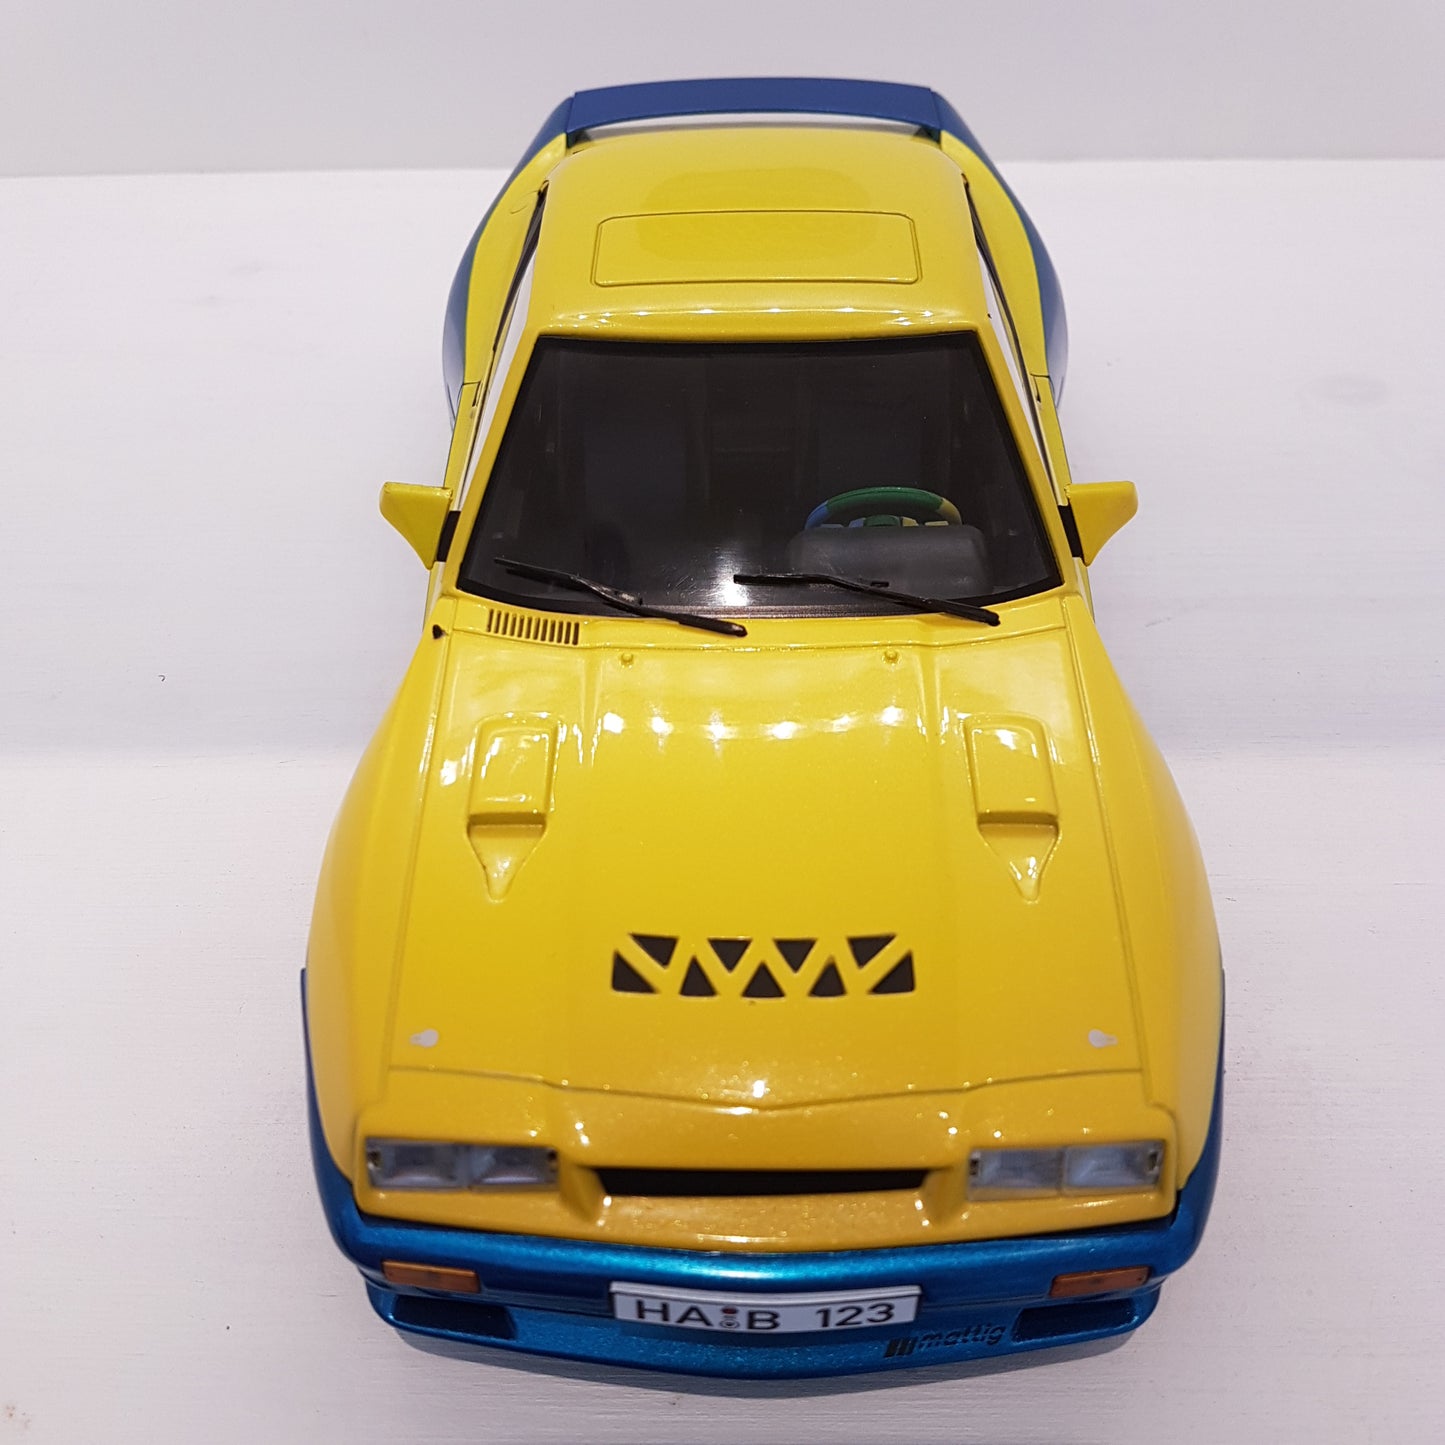 1:18 Opel Manta B Mattig, MCG, 1991, gul/blå, lukket model